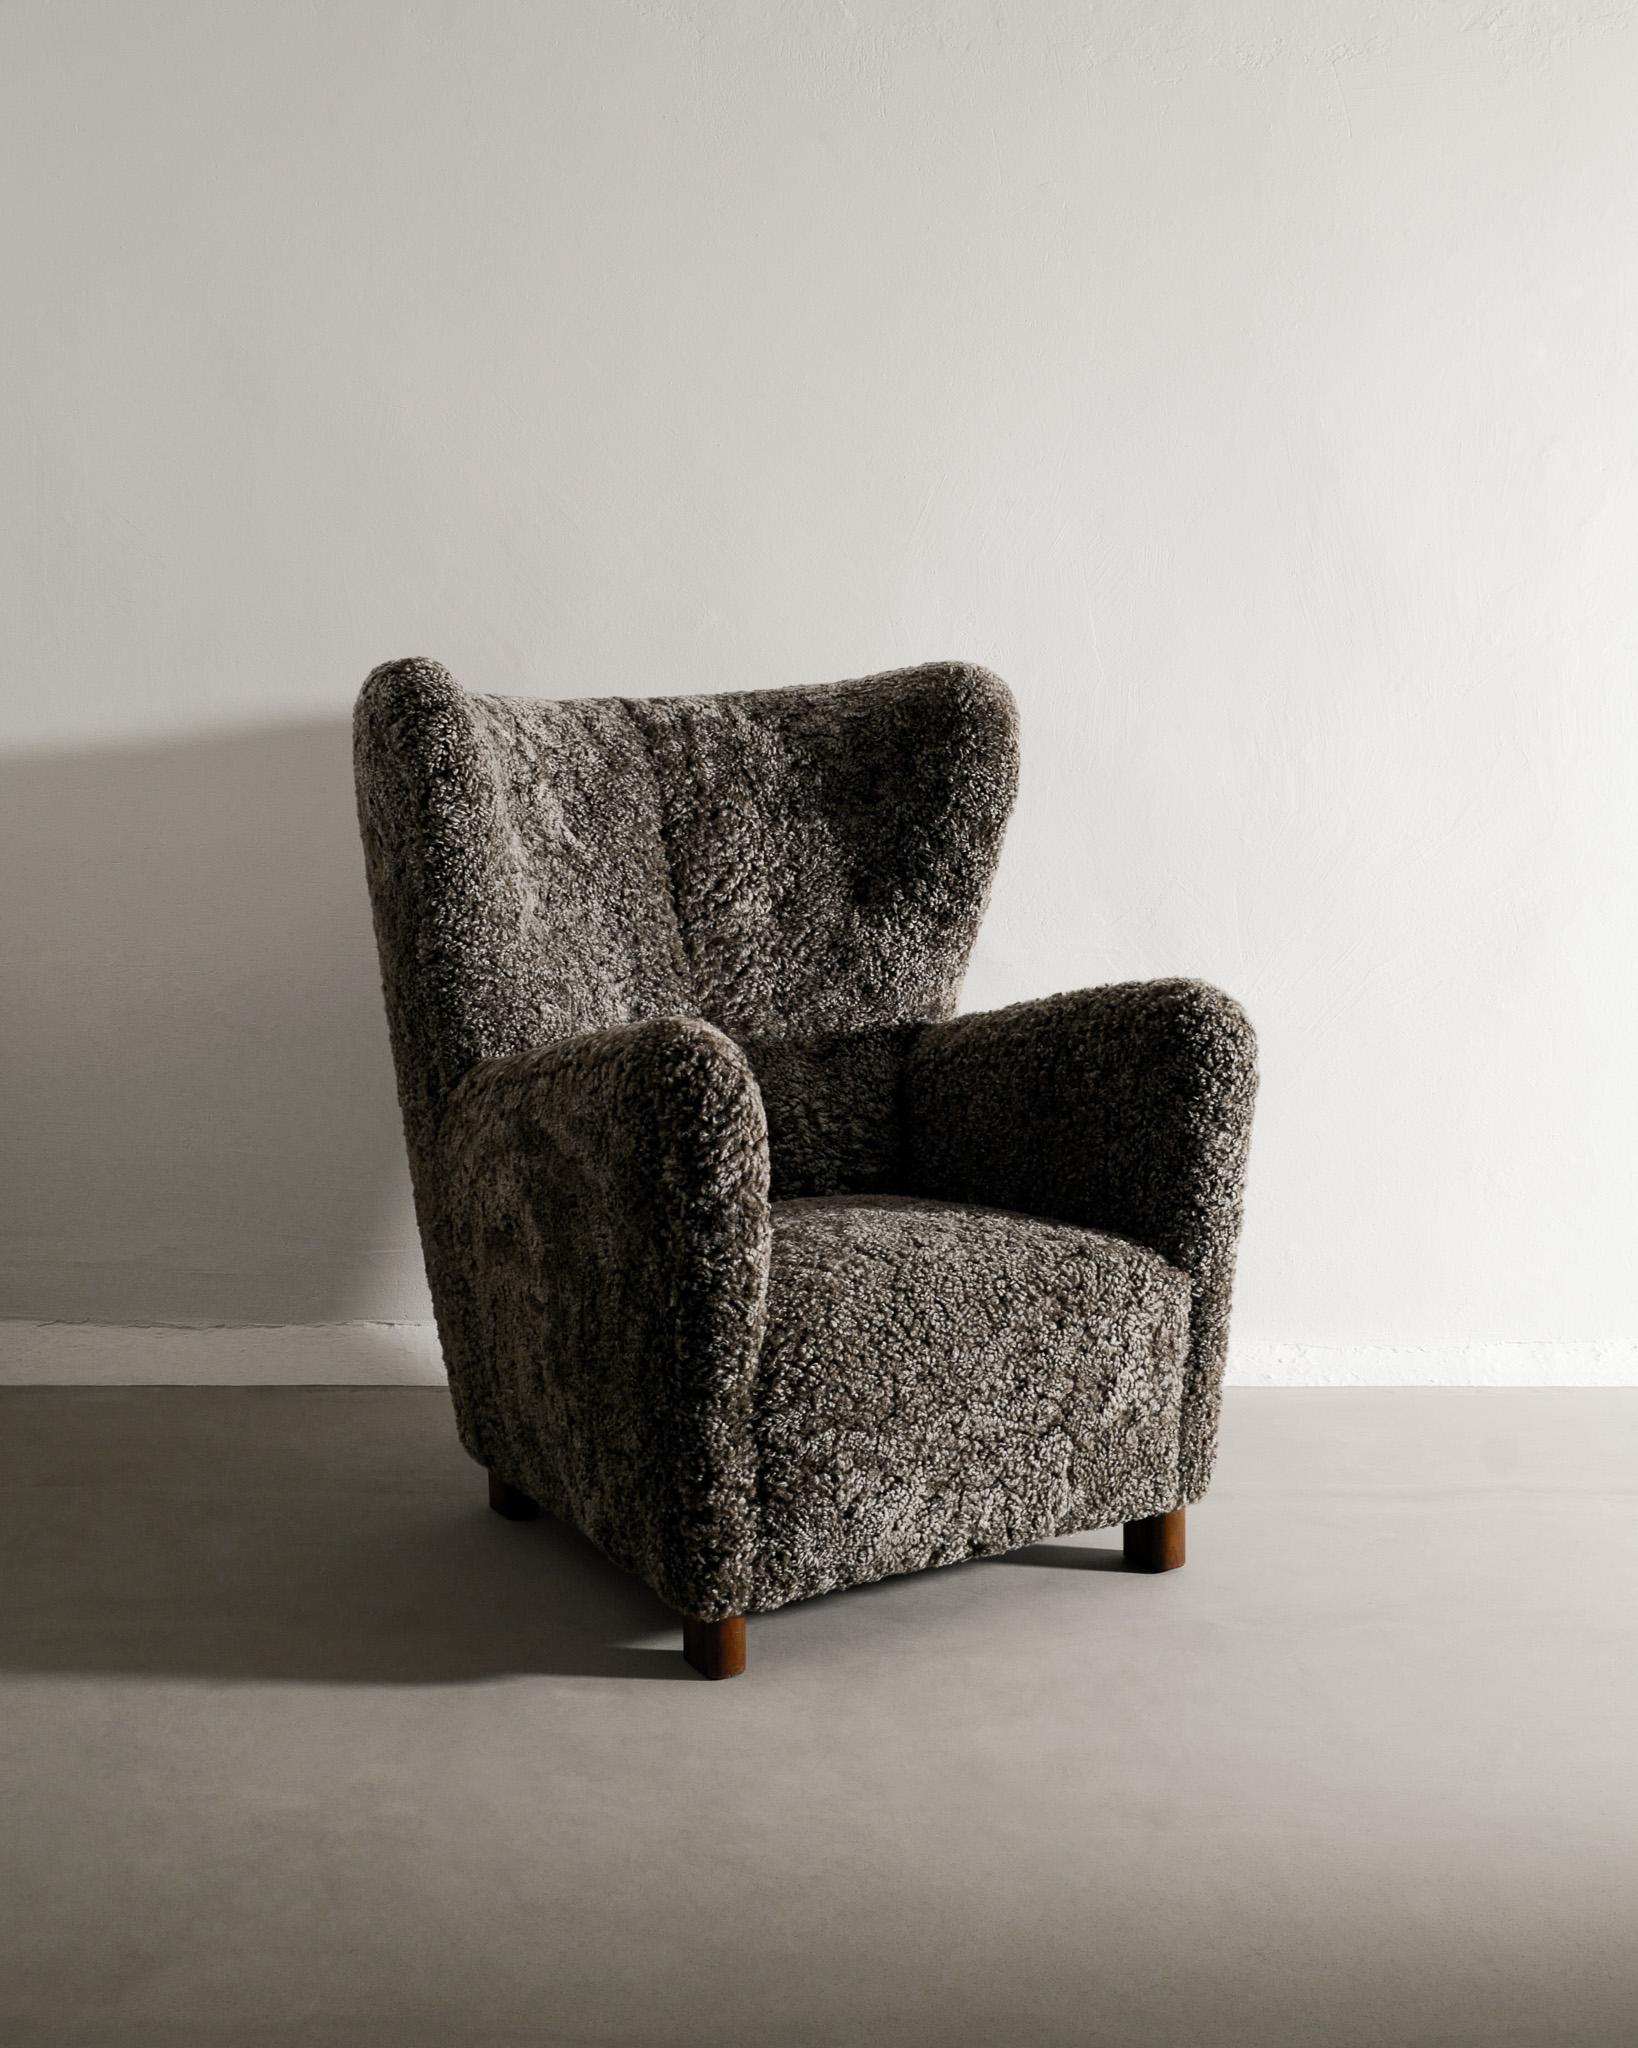 Seltener dänischer Hochlehner-Sessel aus der Mitte des Jahrhunderts, hergestellt von Thorald Madsen Snedkeri in Dänemark in den 1940er Jahren. In sehr gutem Zustand und von uns vollständig restauriert und mit dunklem mokkafarbenem Schaffell bezogen.